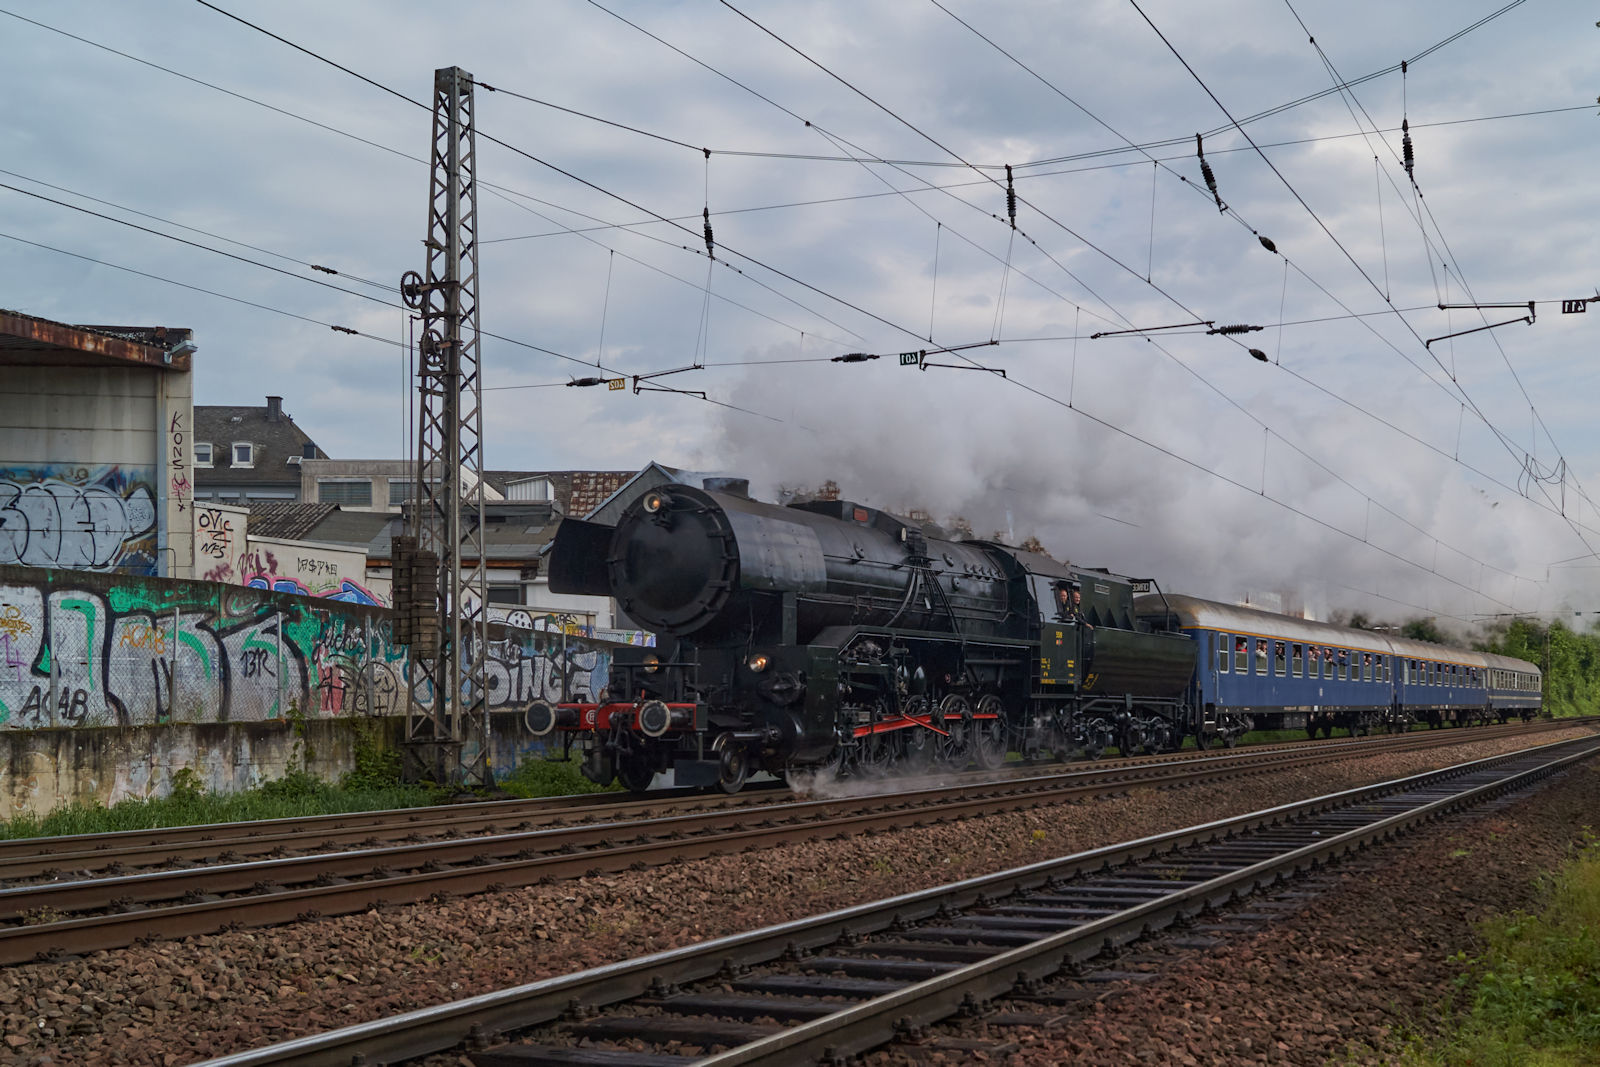 Anlsslich des Dampfspektakels 2018 kam auch CfL 5519 nach Trier. Wie an allen Tagen zog sie DPE 13400 von Trier nach Luxemburg Ville. In Krze wird Trier Sd erreicht.